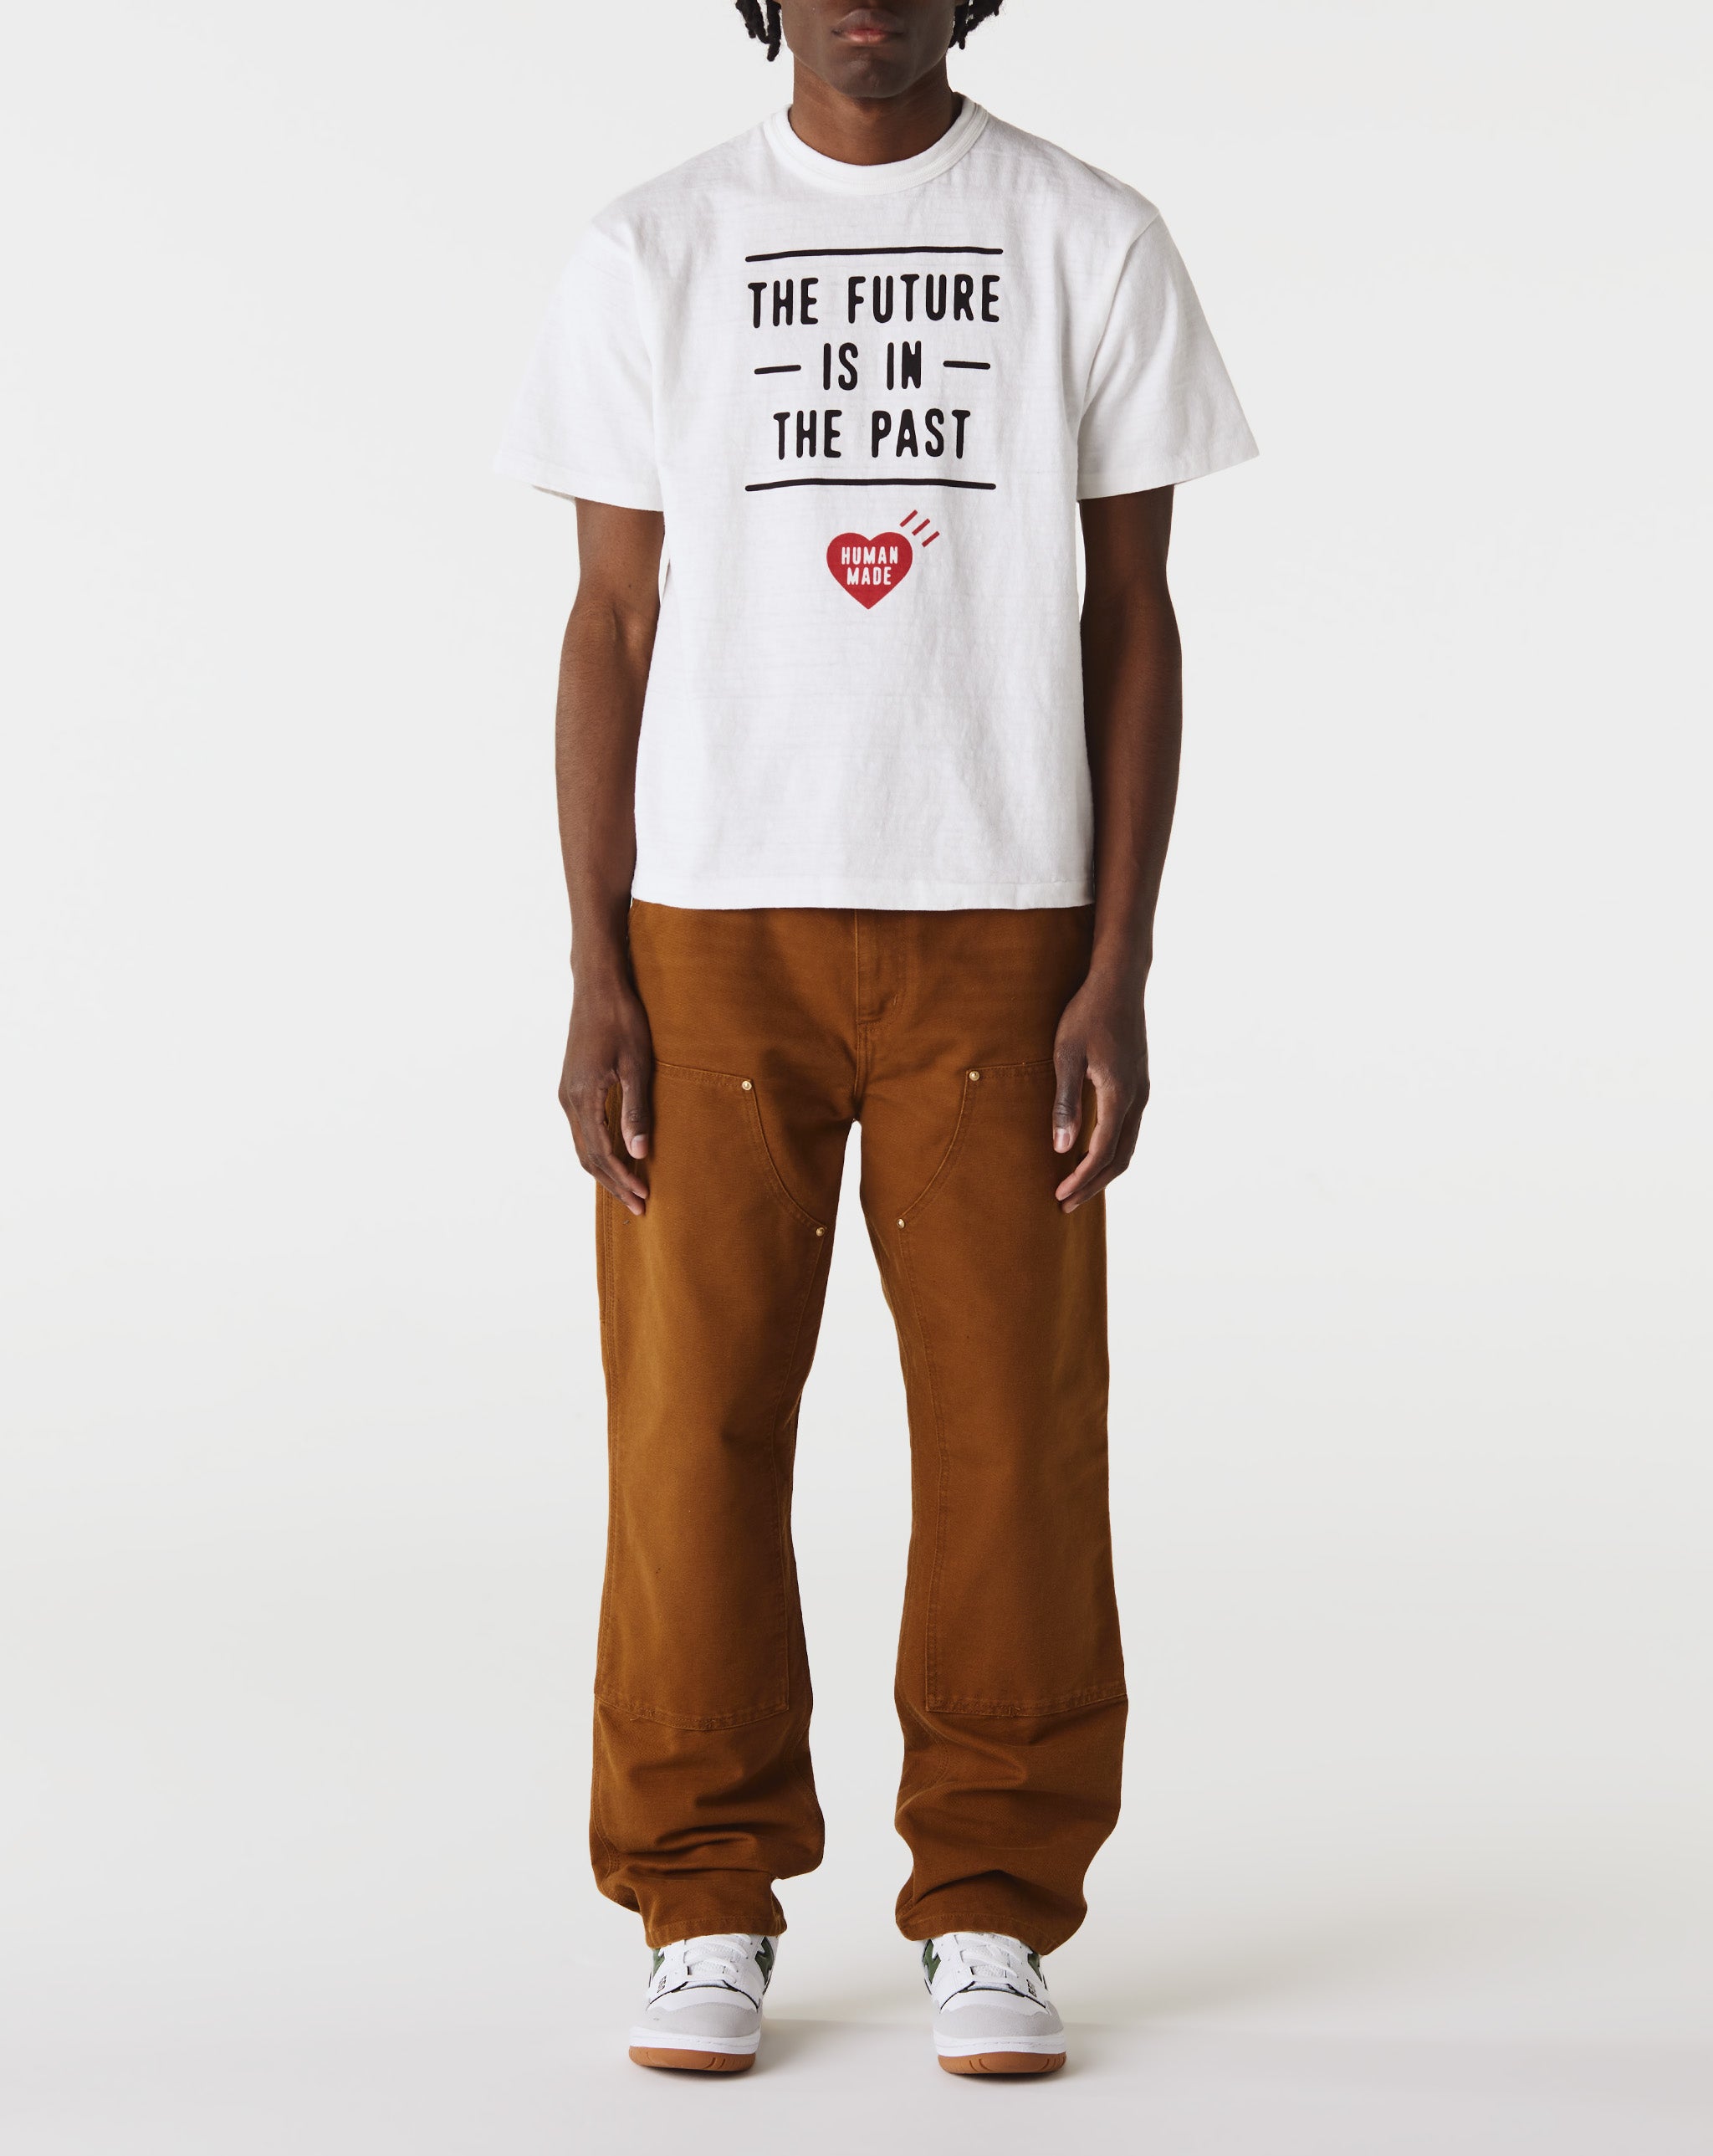 Human Made Graphic T-Shirt #03  - Cheap 127-0 Jordan outlet